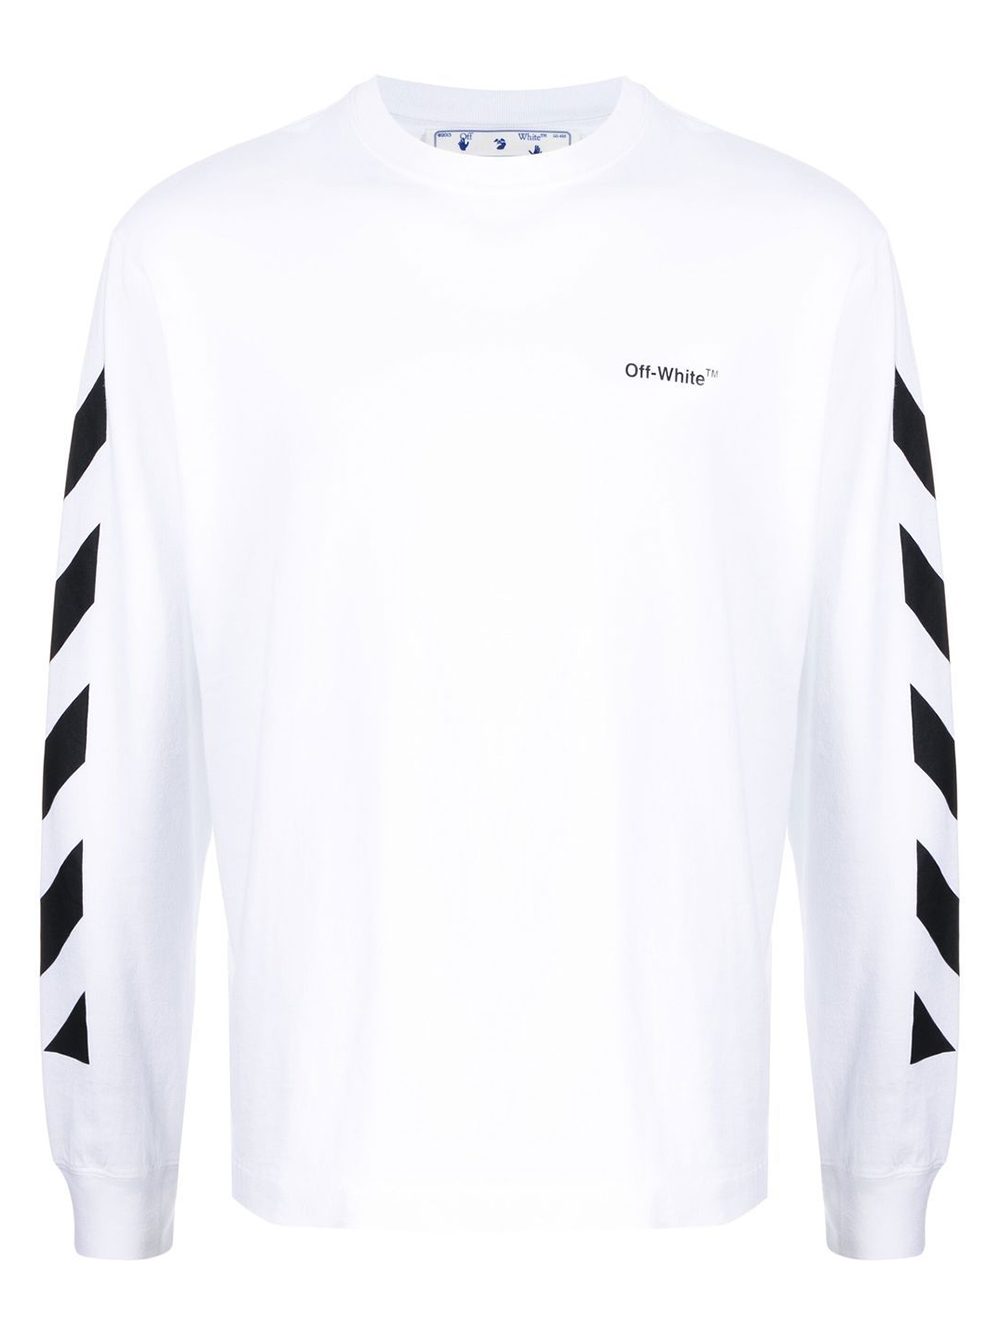 OFF-WHITE Diagonal Helvetica Long Sleeve T-Shirt White/Black Men's